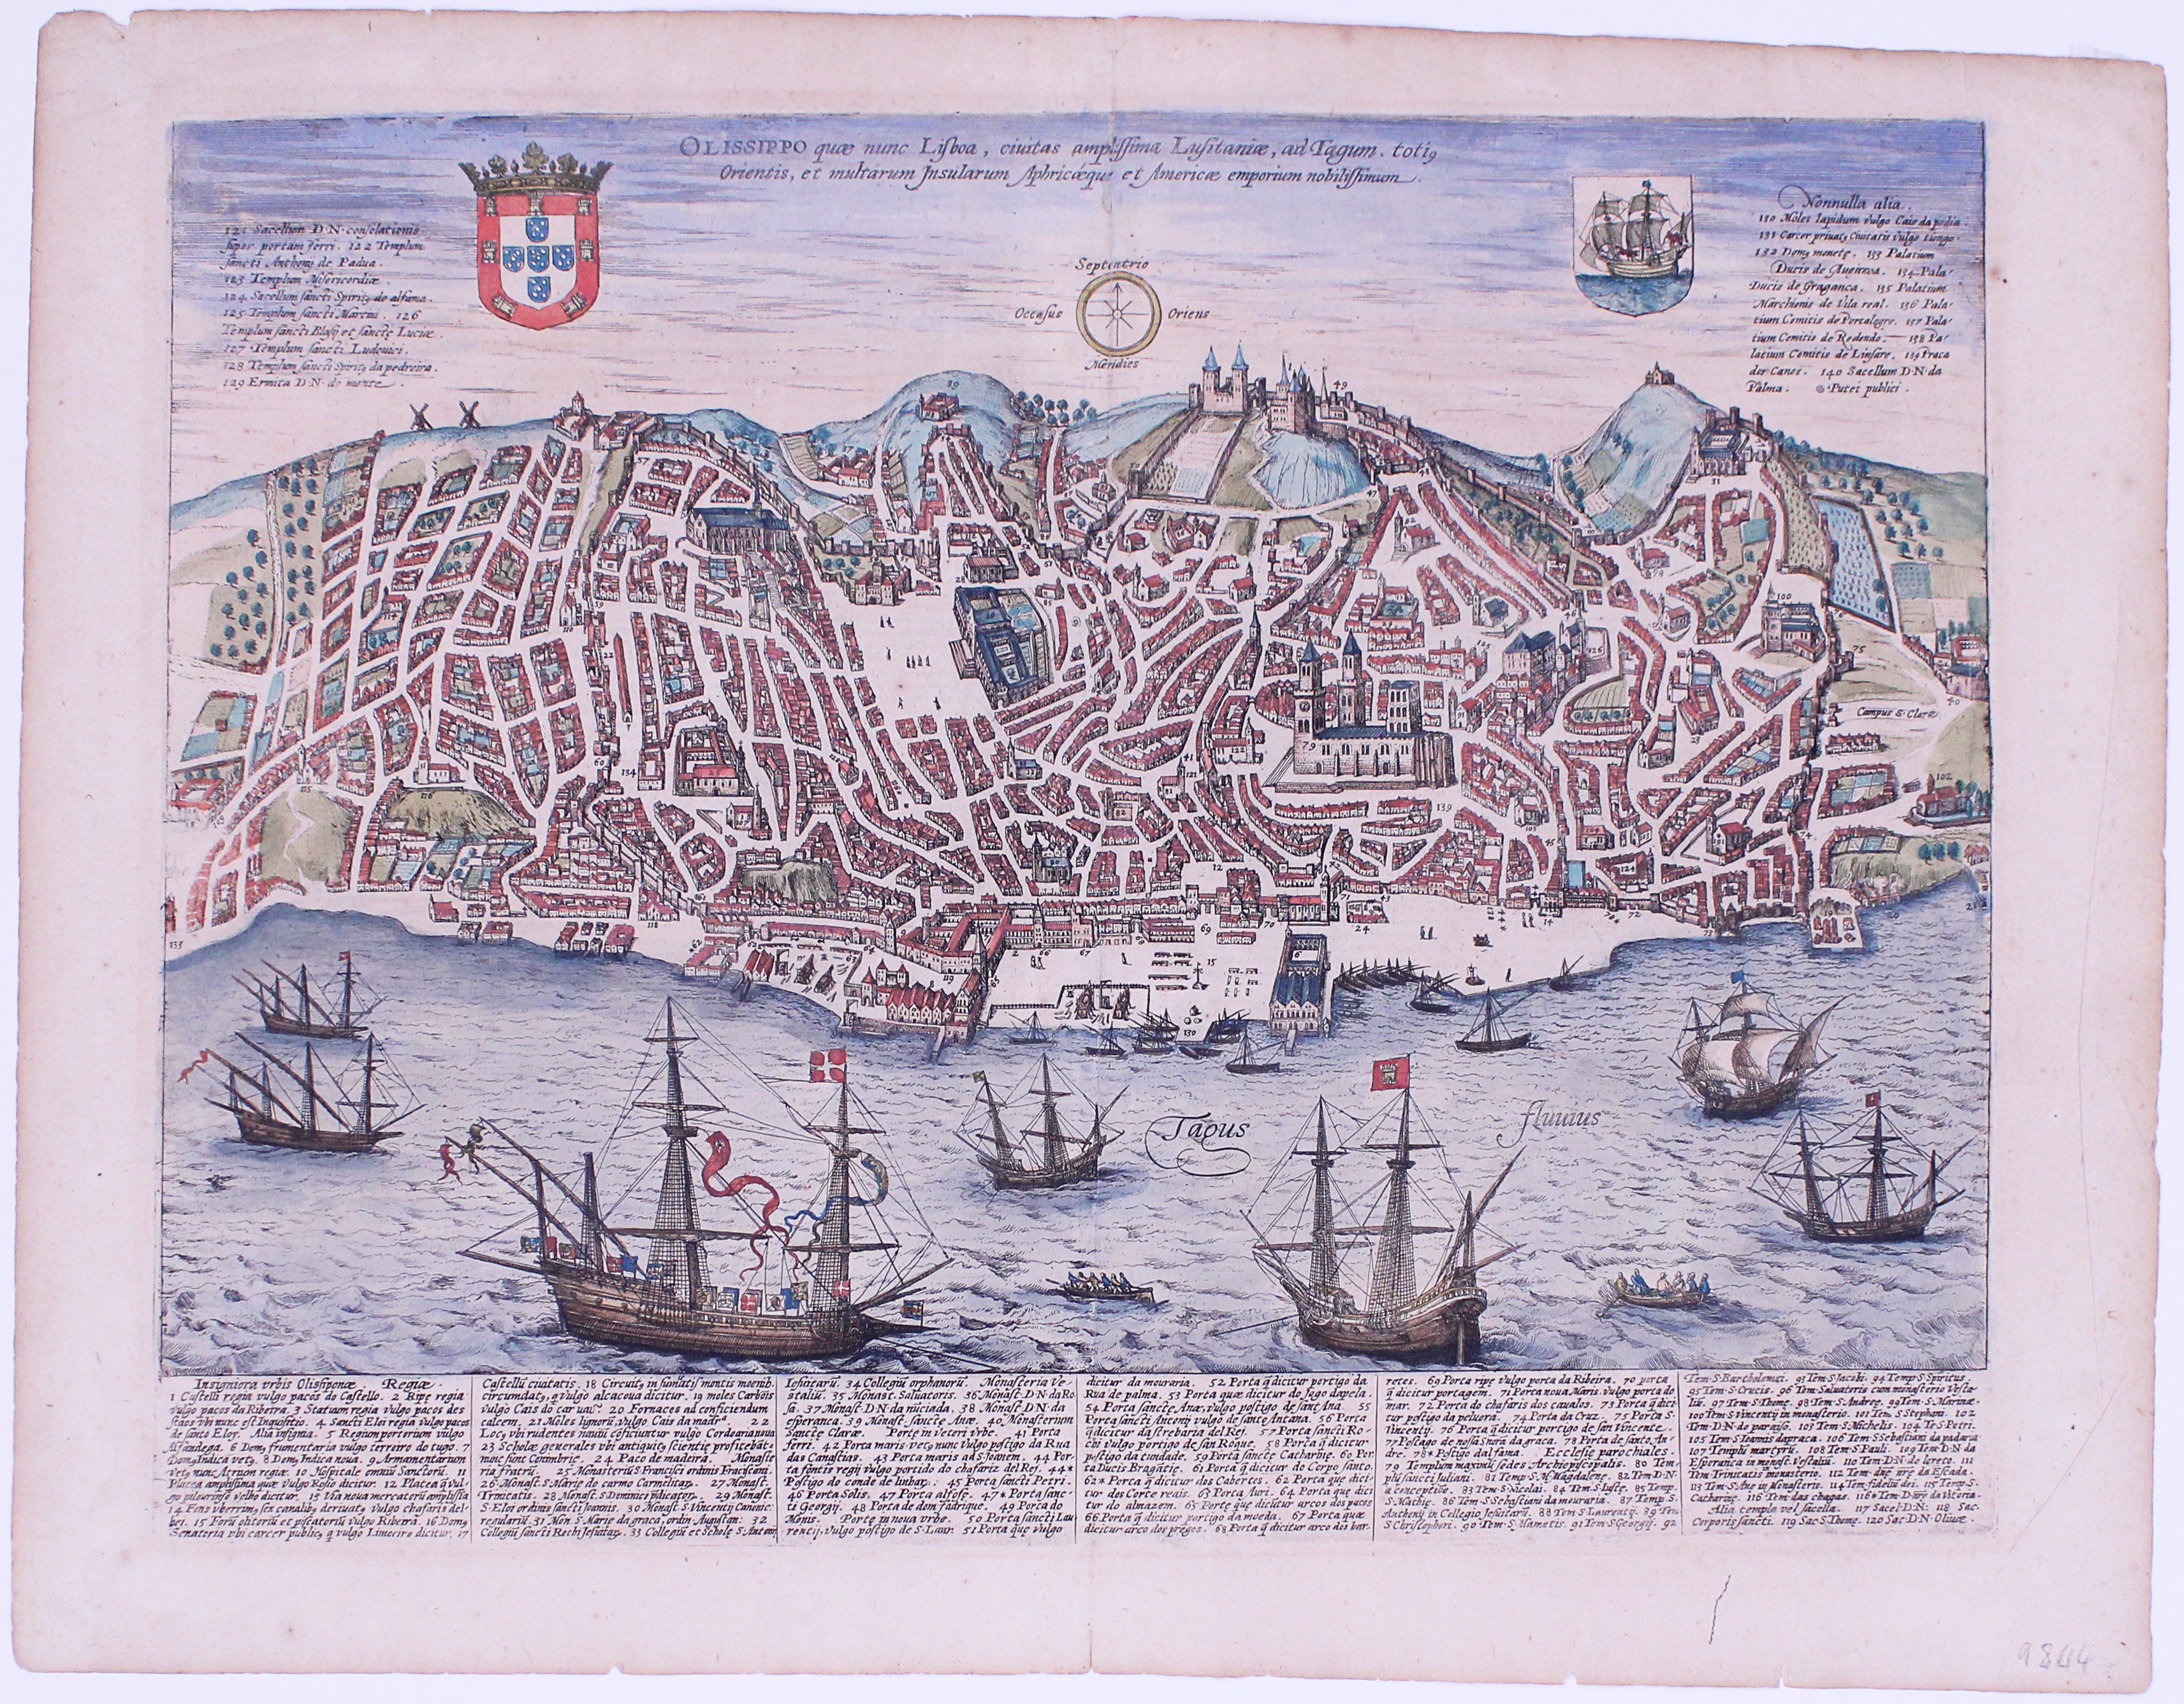 Braun & Hogenberg's Map of Lisbon